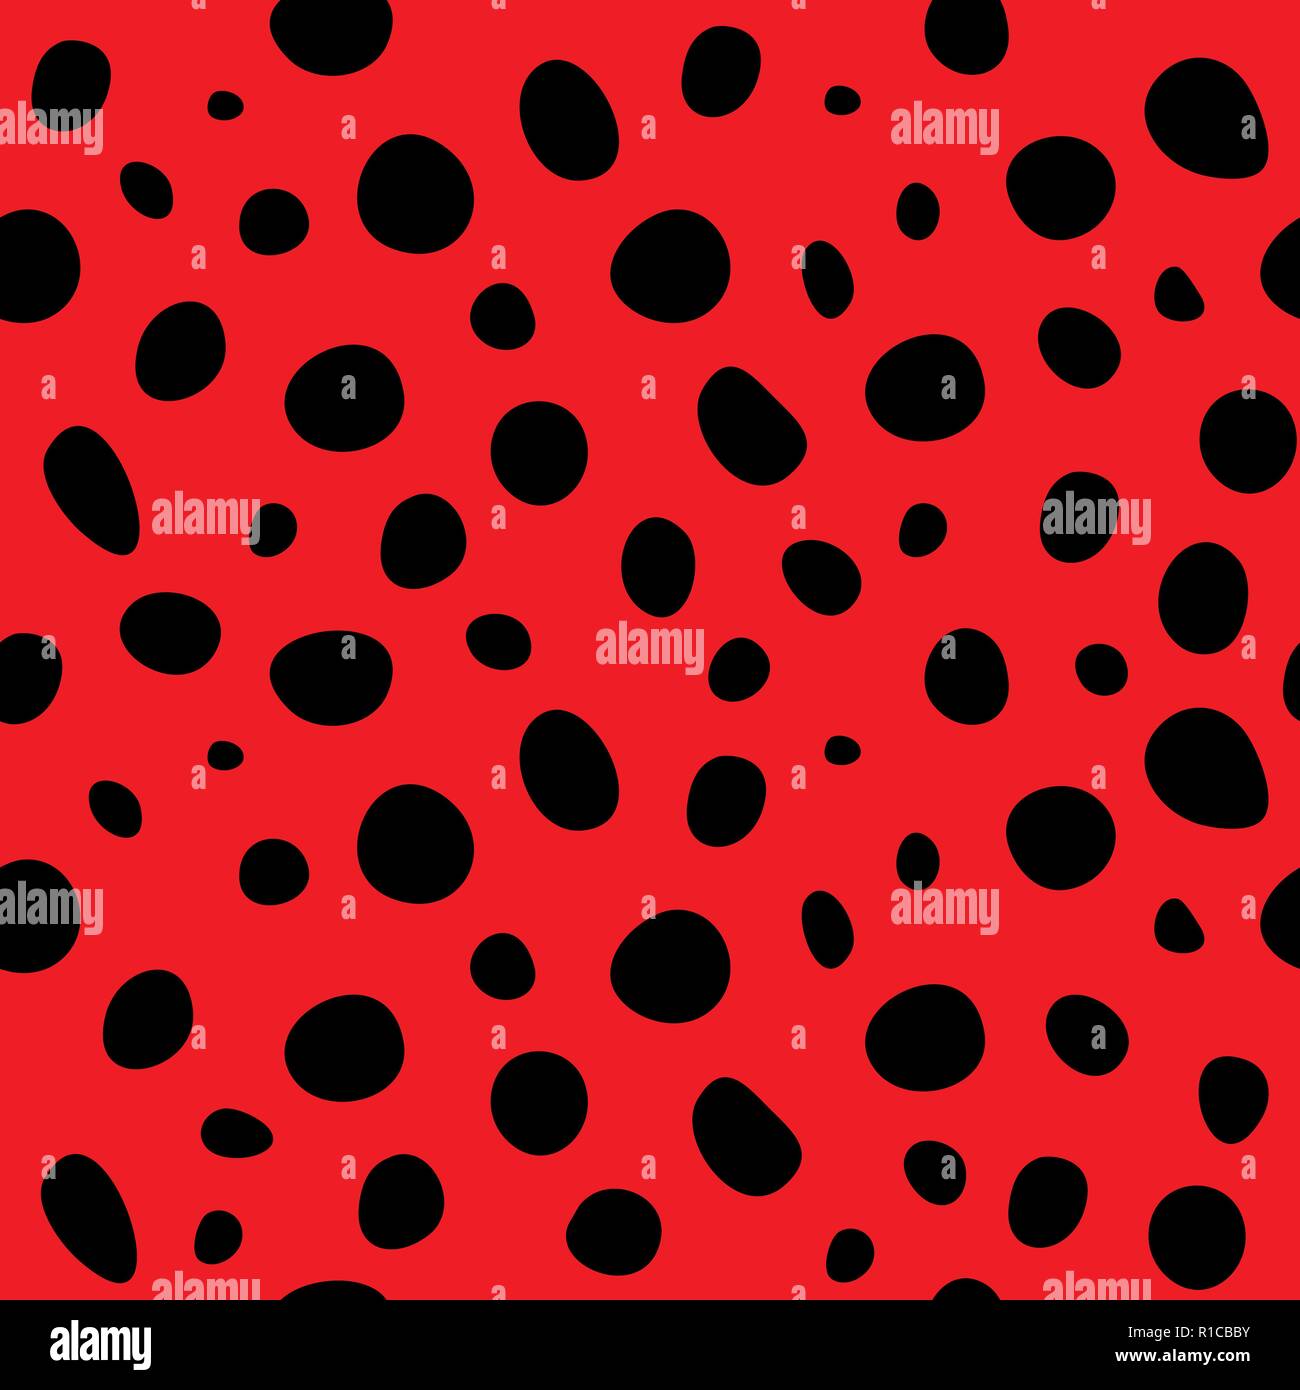 Vektor nahtlose Lady bug gepunkteten Muster. Marienkäfer Polka Dot Hintergrund. Marienkäfer rot und schwarz Tapeten Textur. Stock Vektor